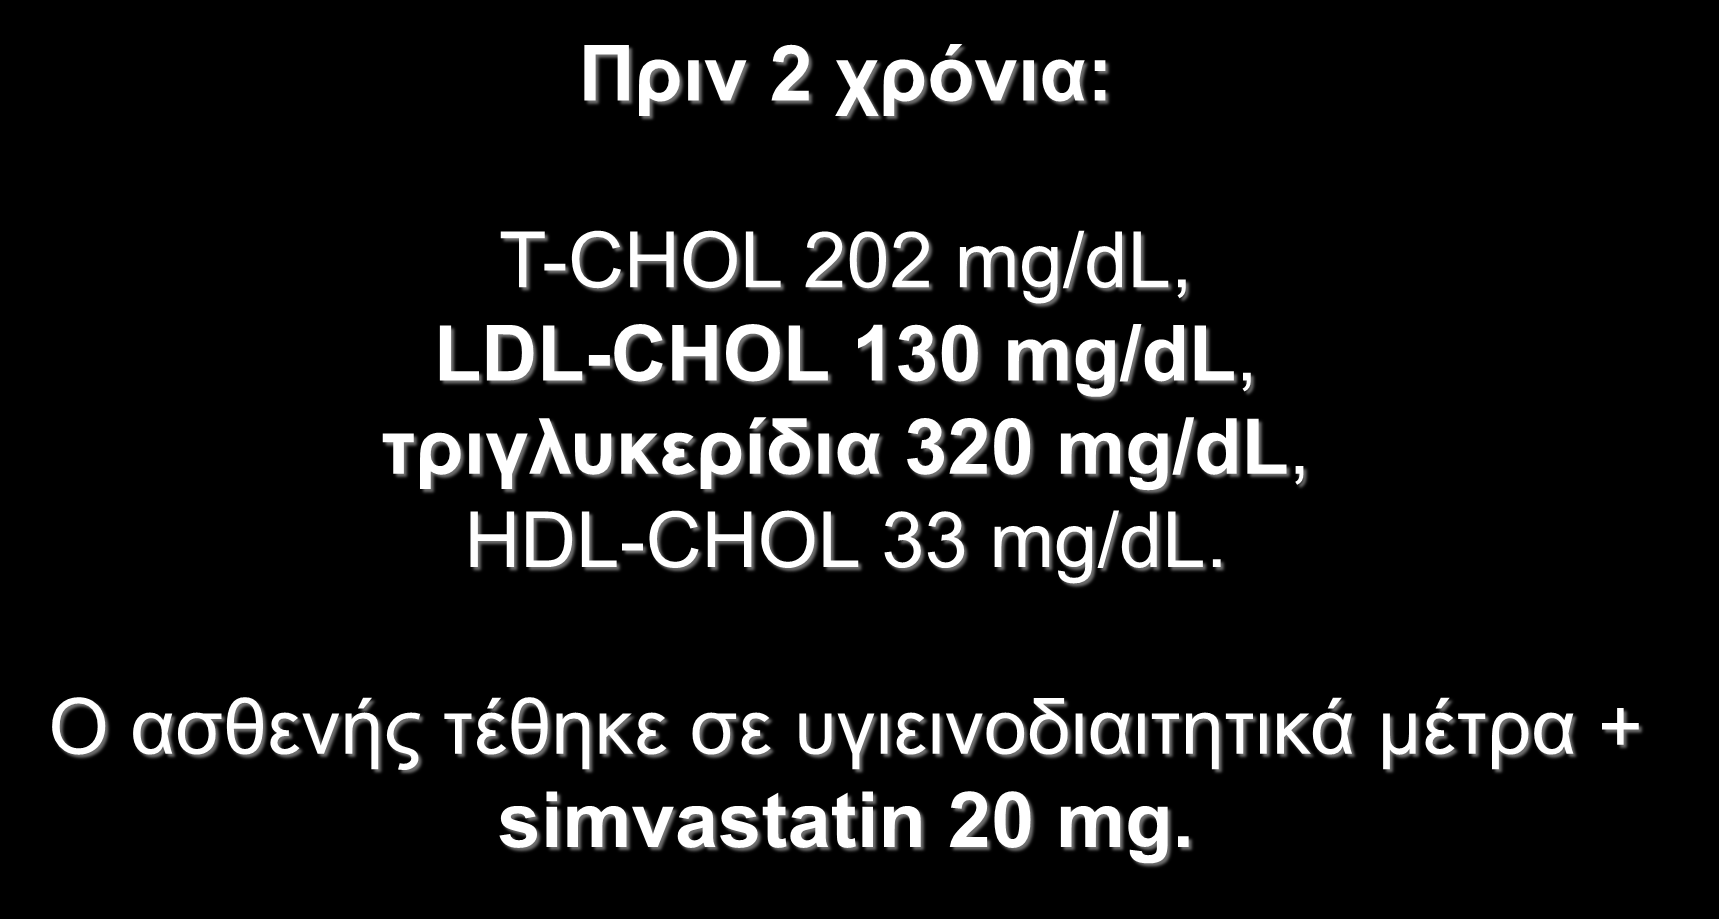 Ππιν 2 σπόνια: T-CHOL 202 mg/dl, LDL-CHOL 130 mg/dl, ηπιγλςκεπίδια 320 mg/dl,